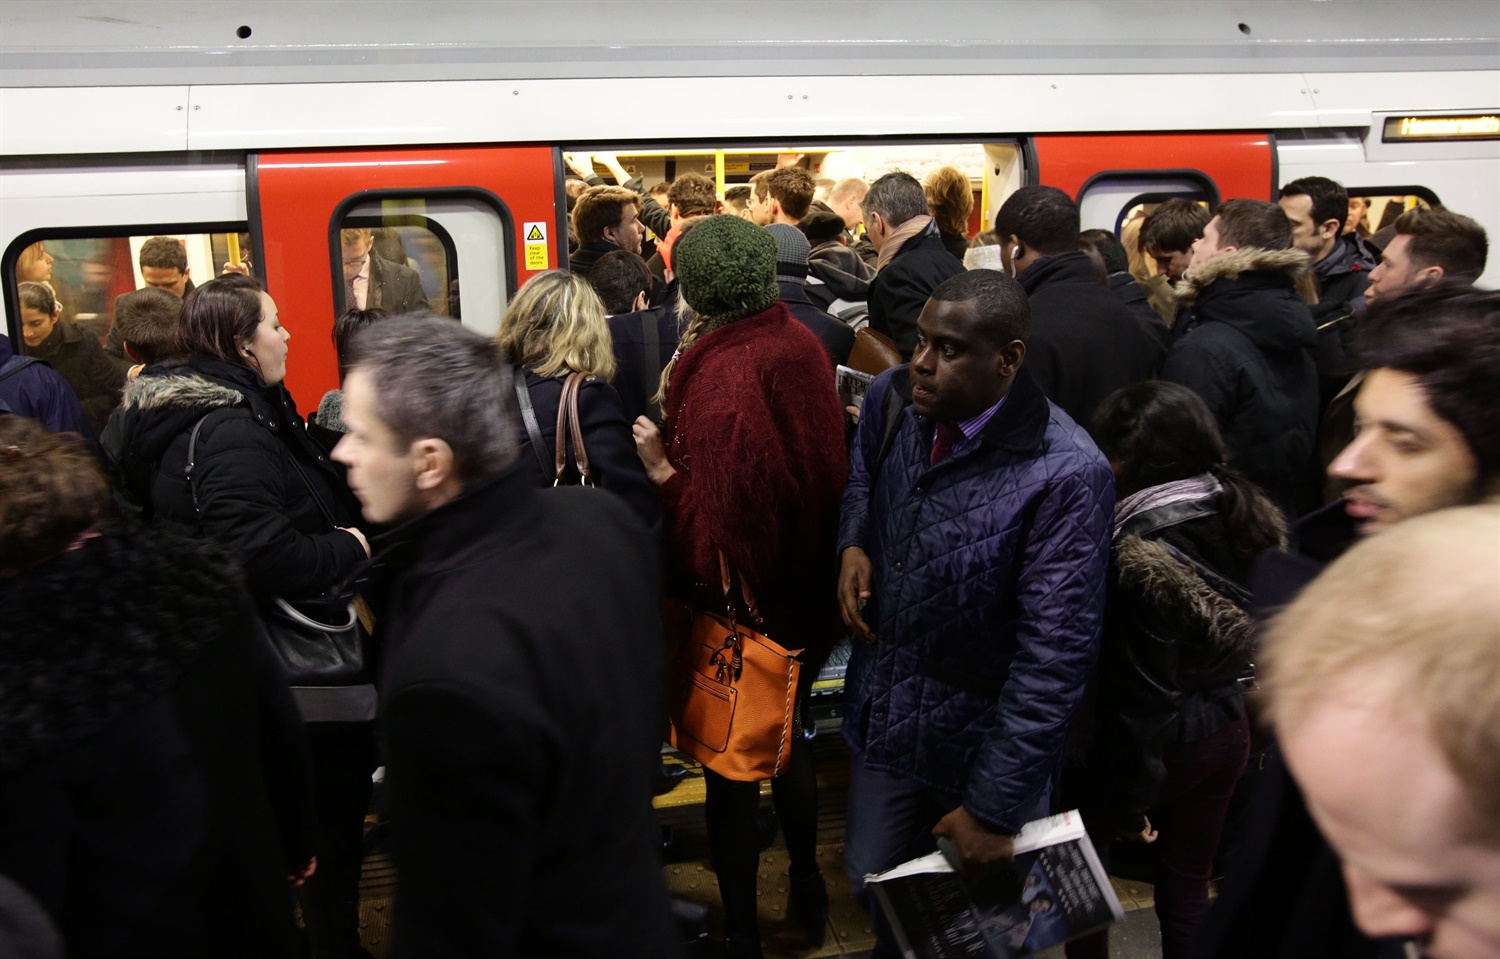 TfL seeks bidders for Bakerloo & Central line passenger information systems